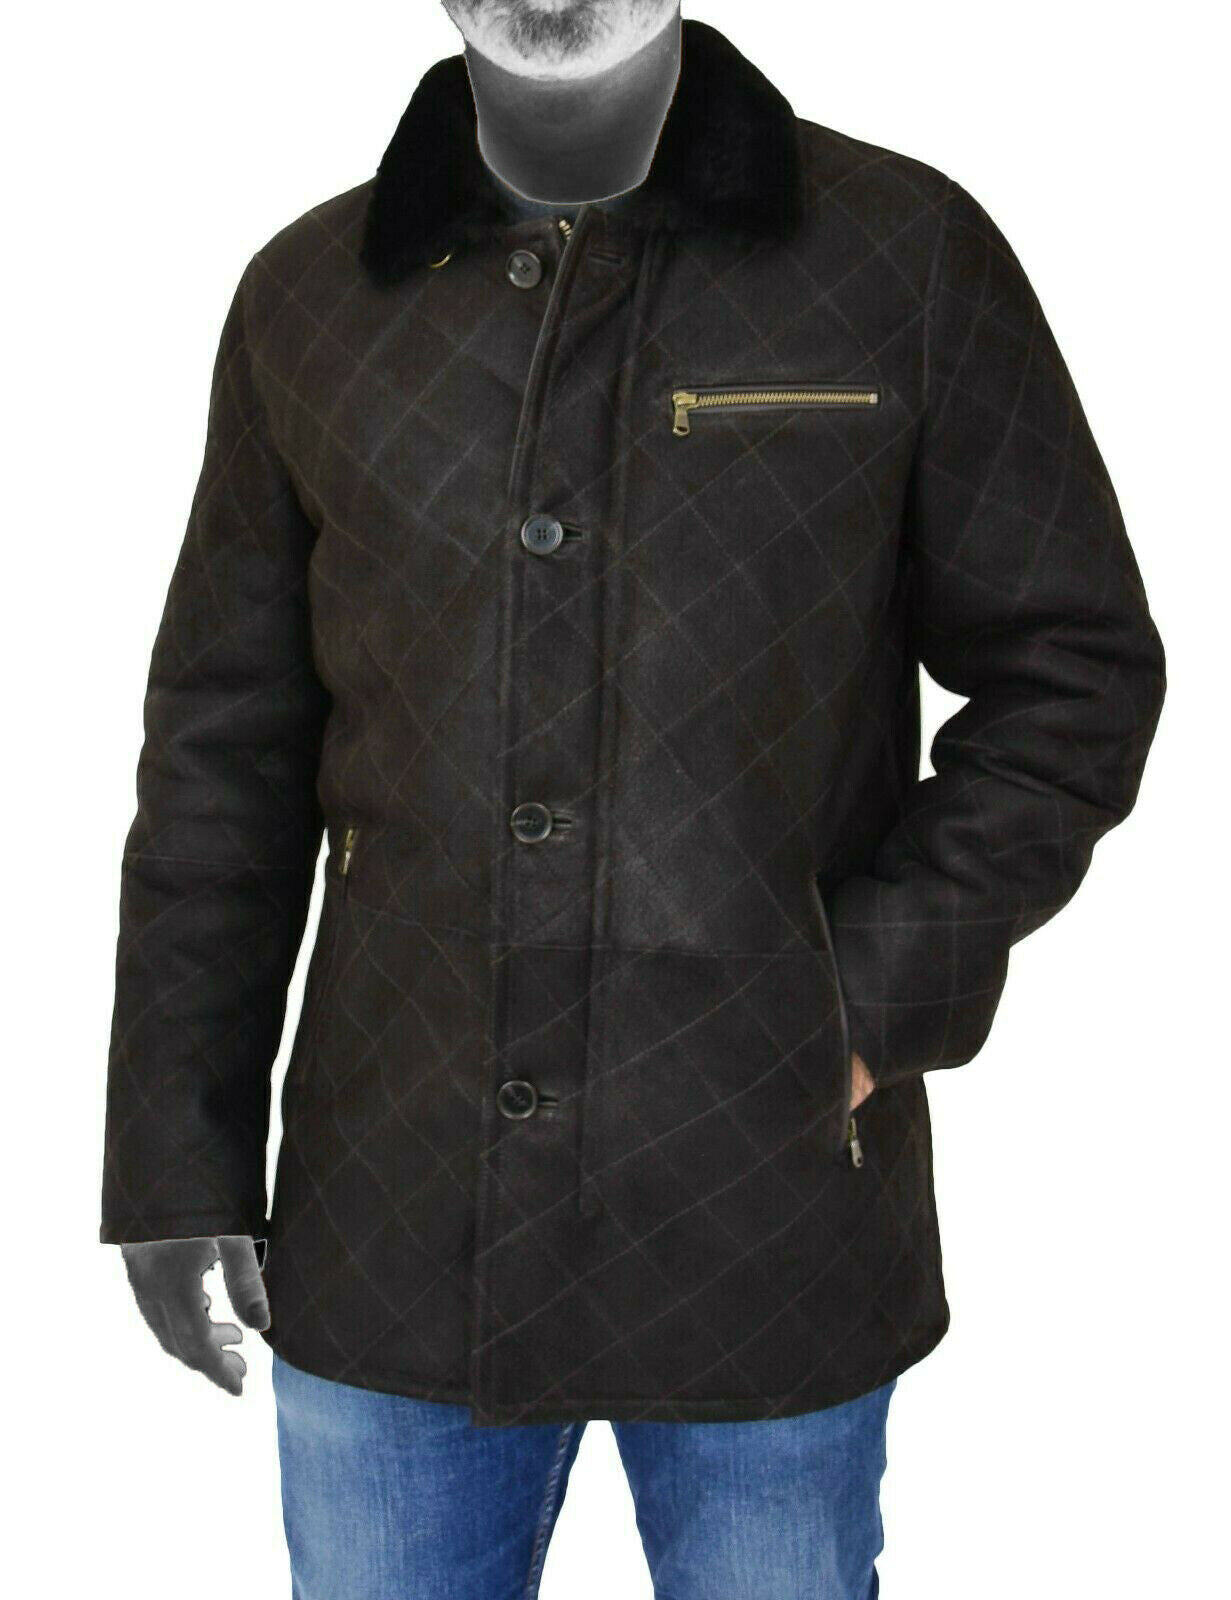 Spine Spark Men's Black Soft Suede Leather Shearling Coat Jacket